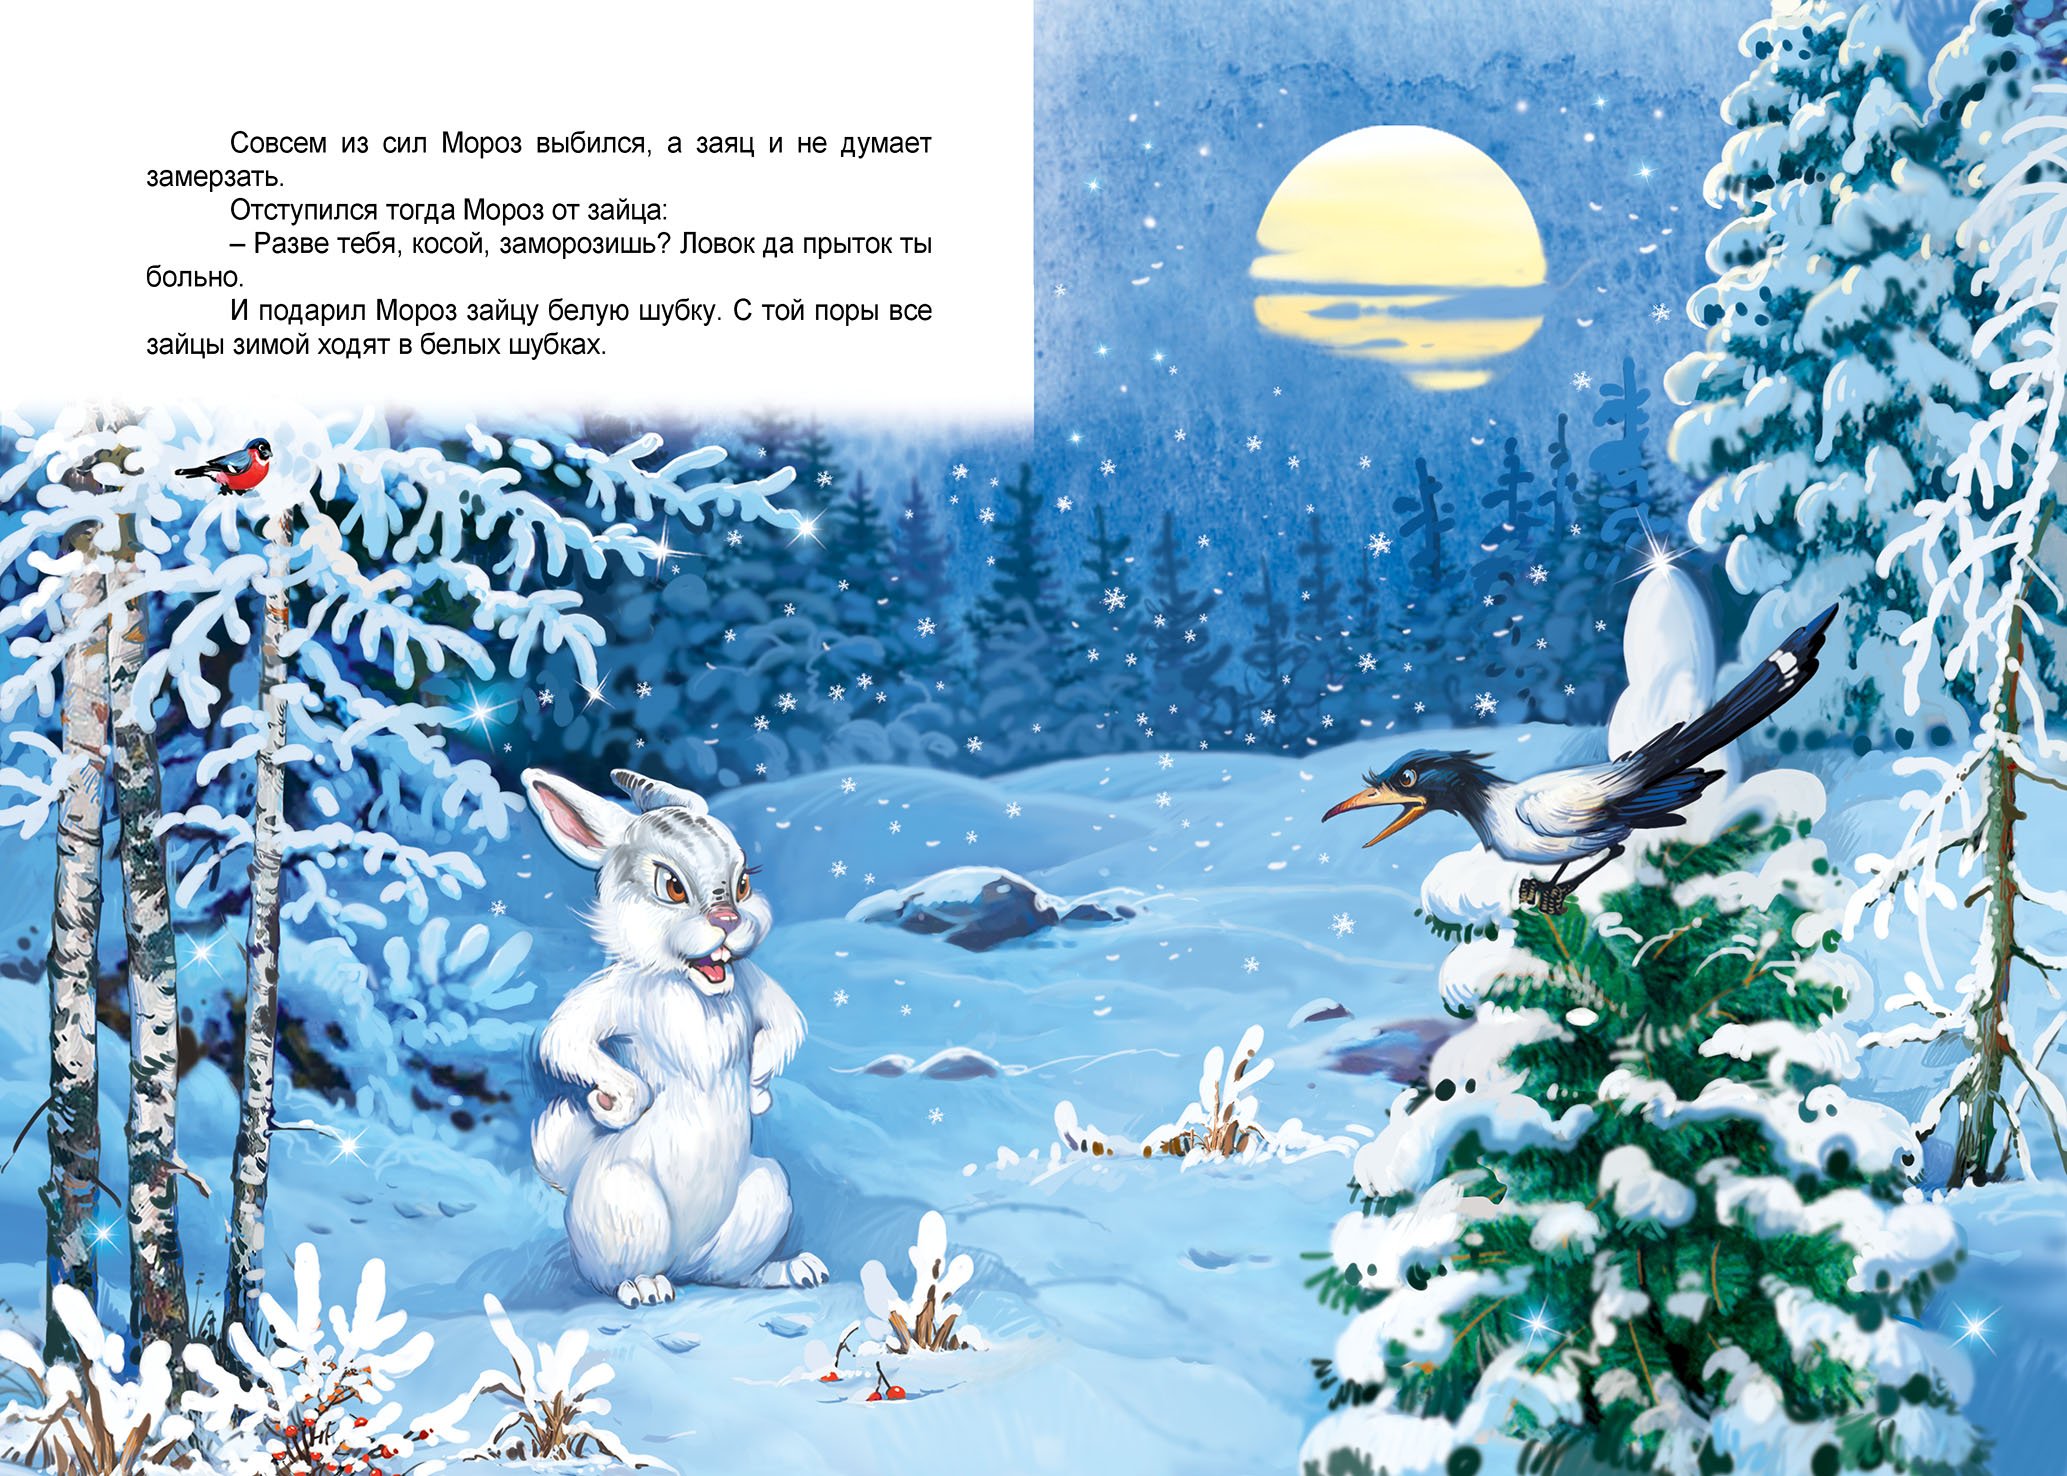 Песня в лес приходит сказка снег фонк. Сказка Мороз и заяц. Иллюстрации к сказке Мороз и заяц. Зимние сказки для детей. Сказка про зайца зимой.